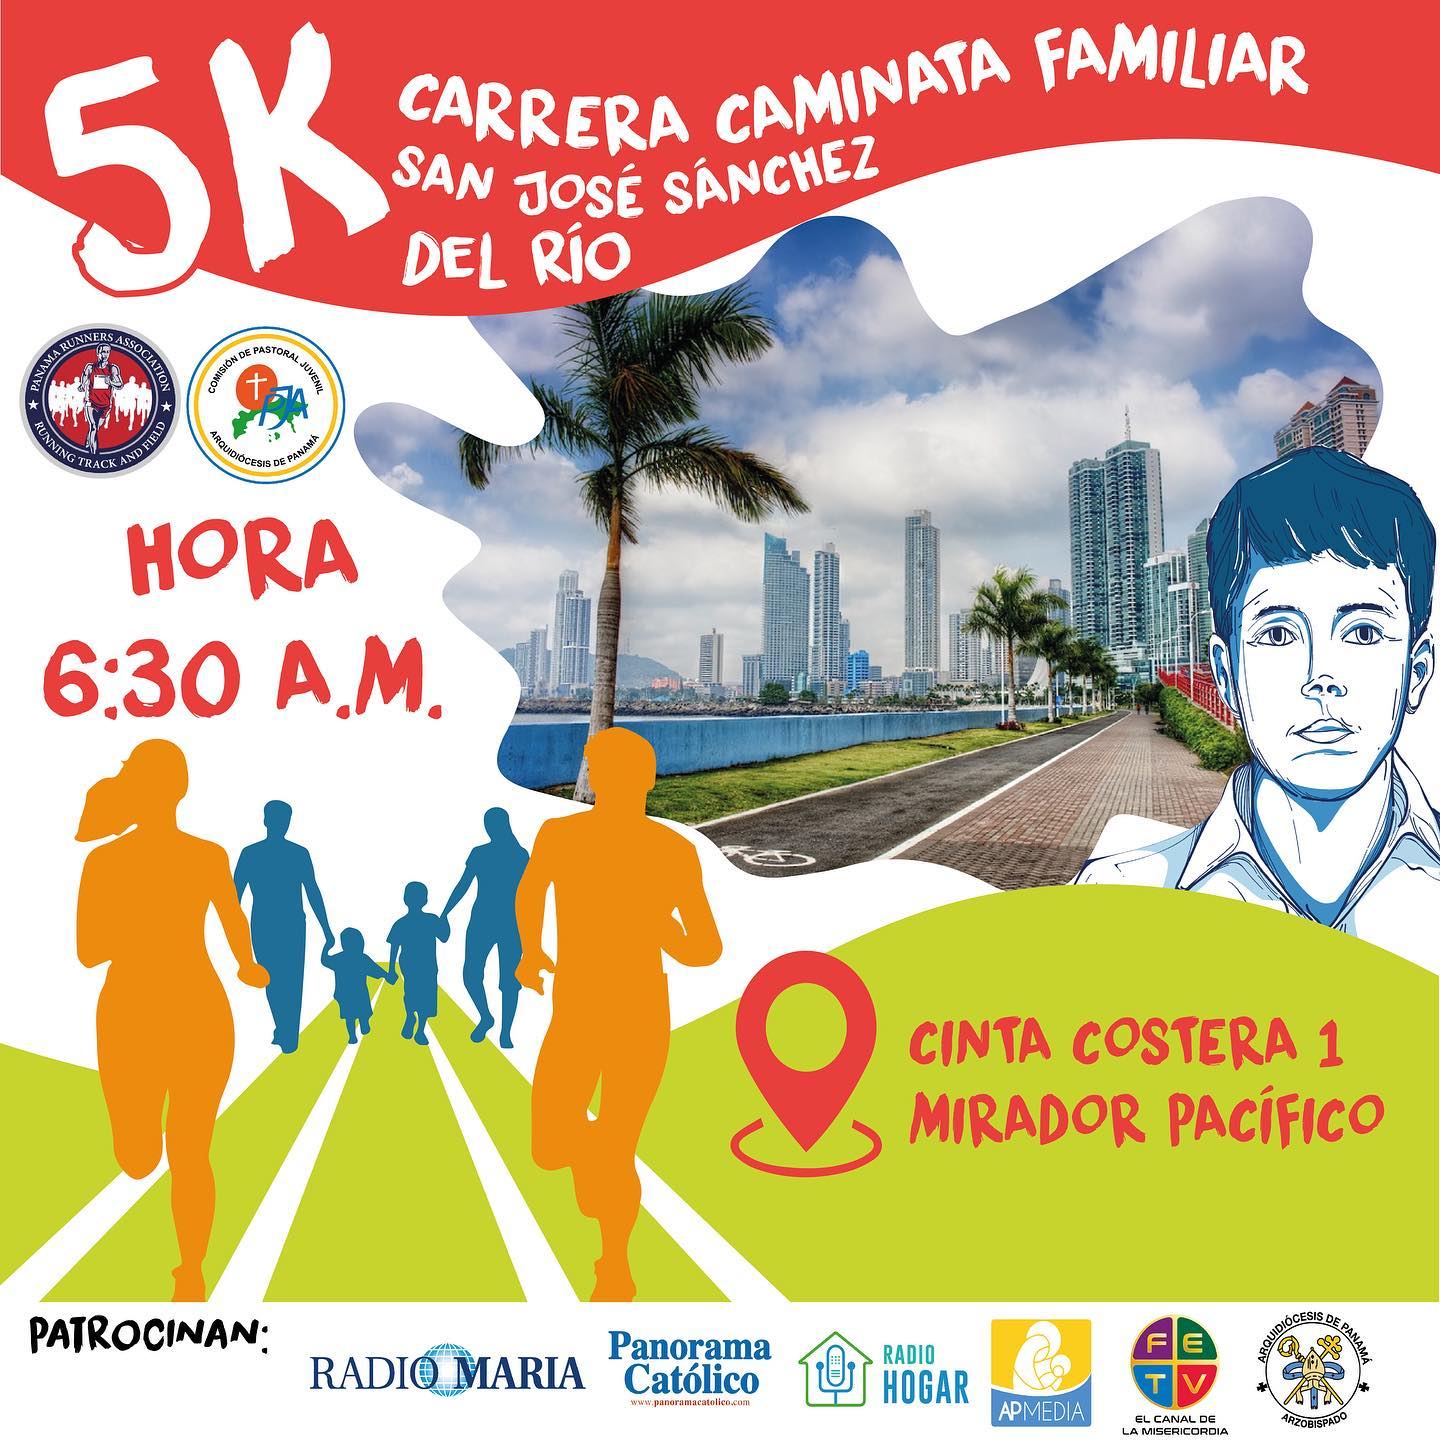 Carrera Caminata Familiar San José Sánchez del Río, 5Km Cinta Costera